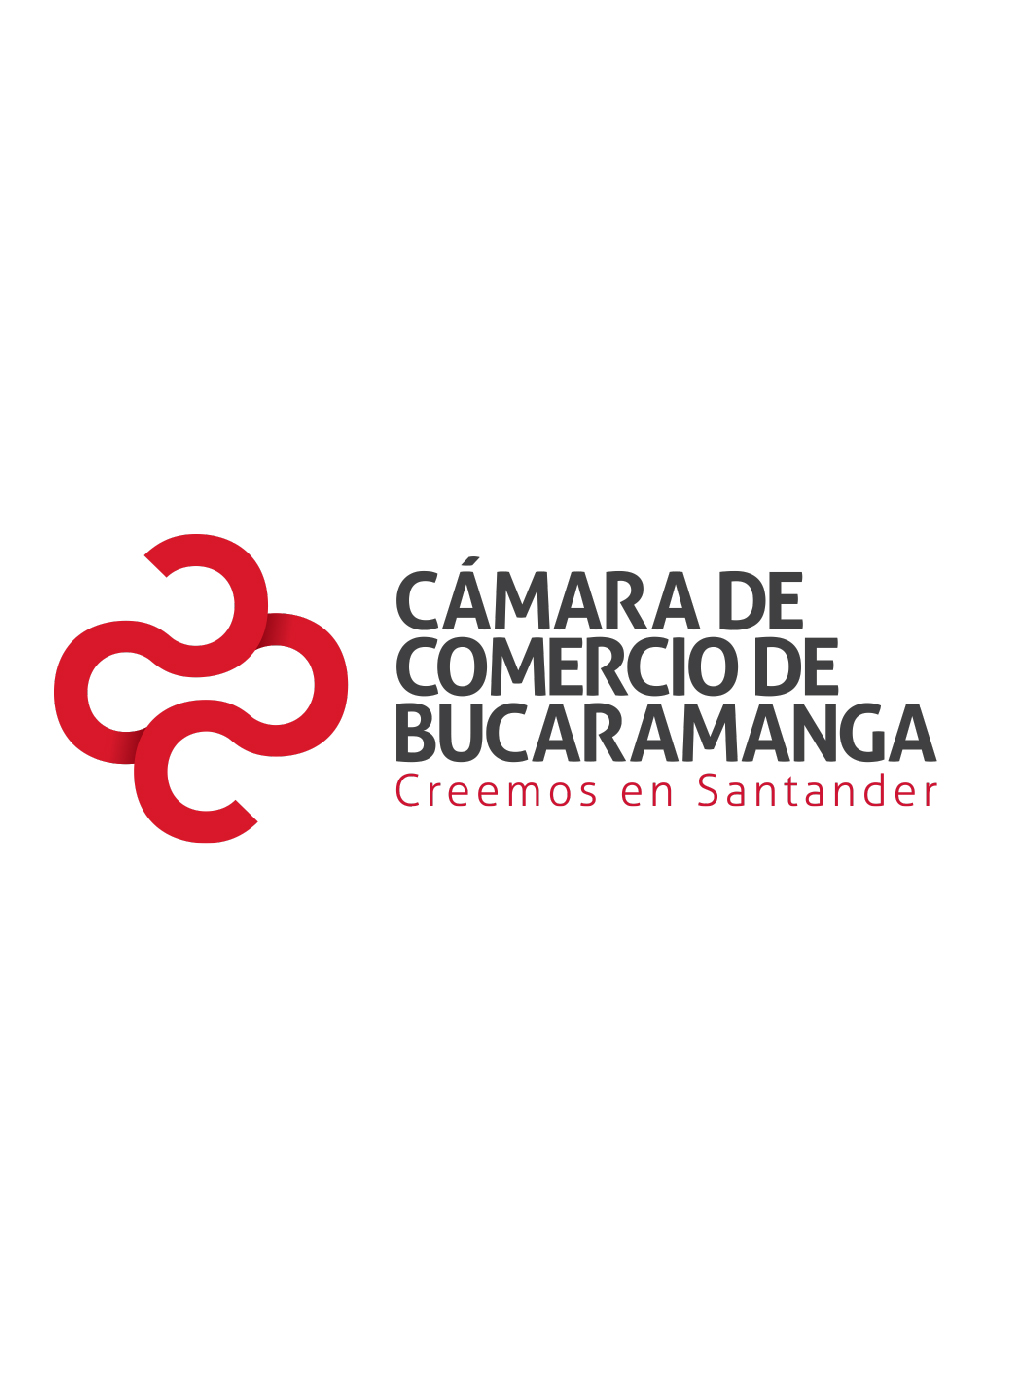 Perfil de las Empresas Exportadoras de Santander 2019 - abril (12 meses)